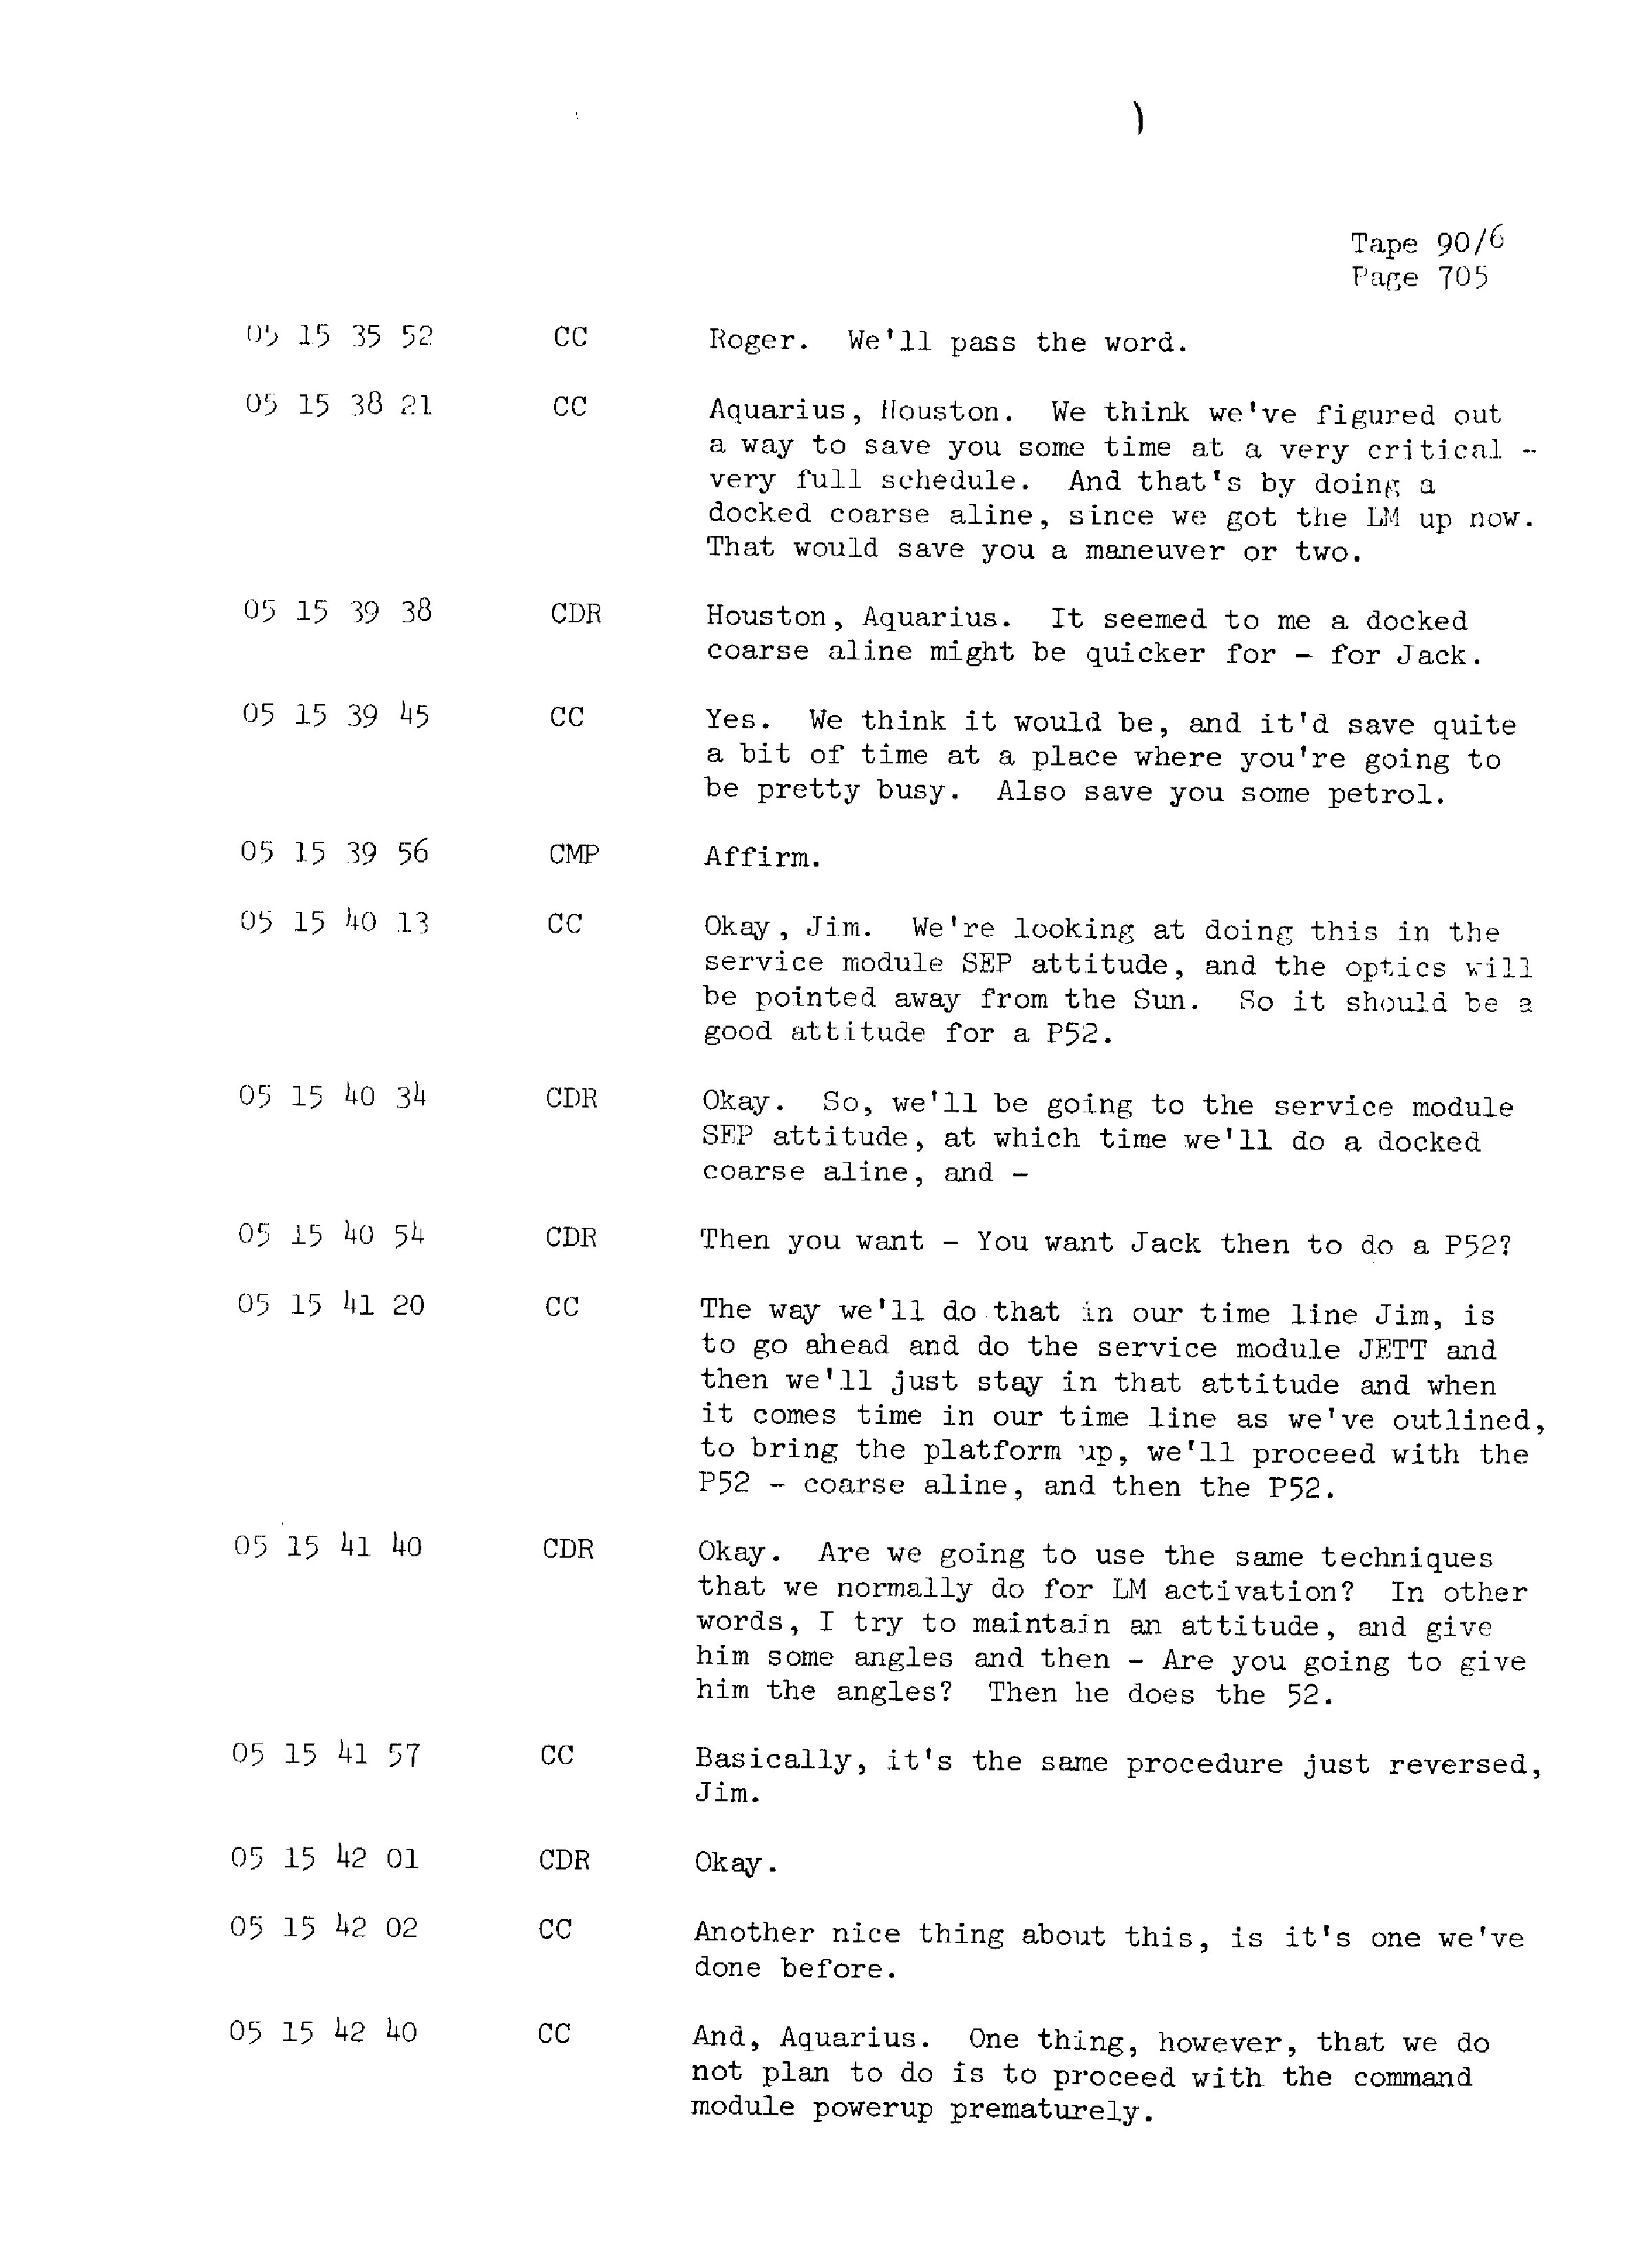 Page 712 of Apollo 13’s original transcript